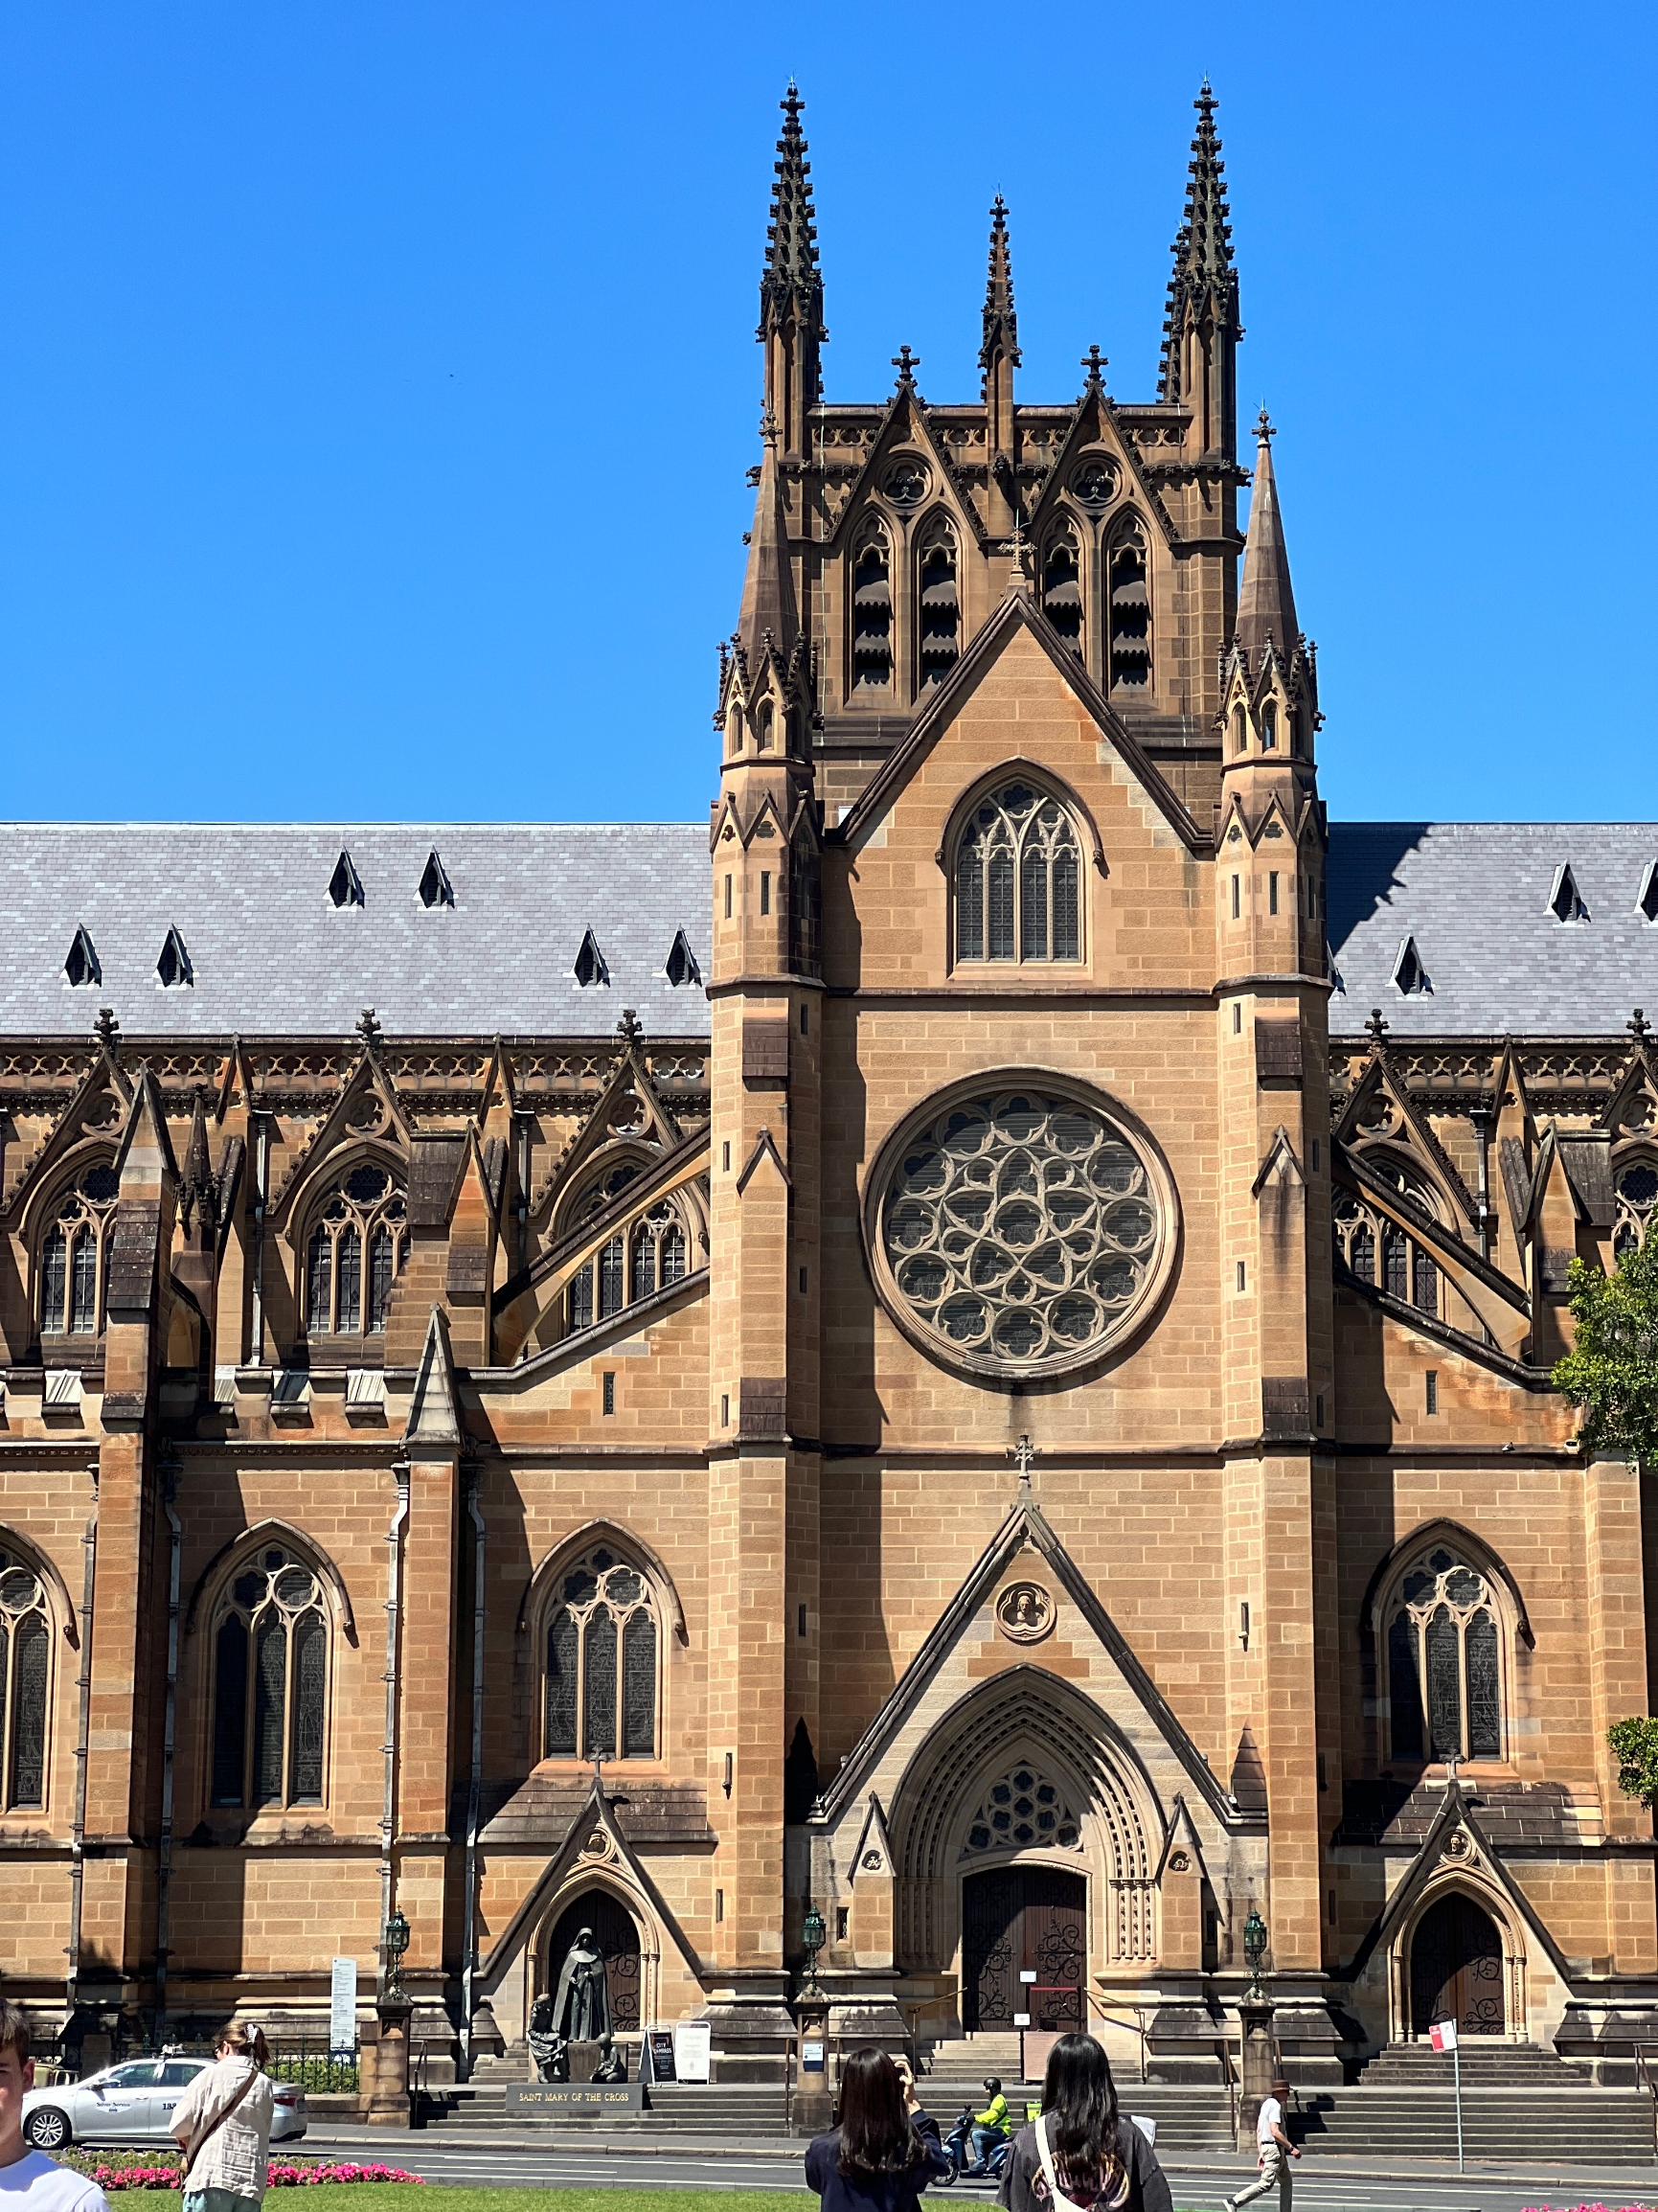 悉尼圣母主教座堂是一座宏伟而壮丽的建筑，它庄严地矗立在城市中心。一踏入教堂，我立刻被其庄严和宁静所震